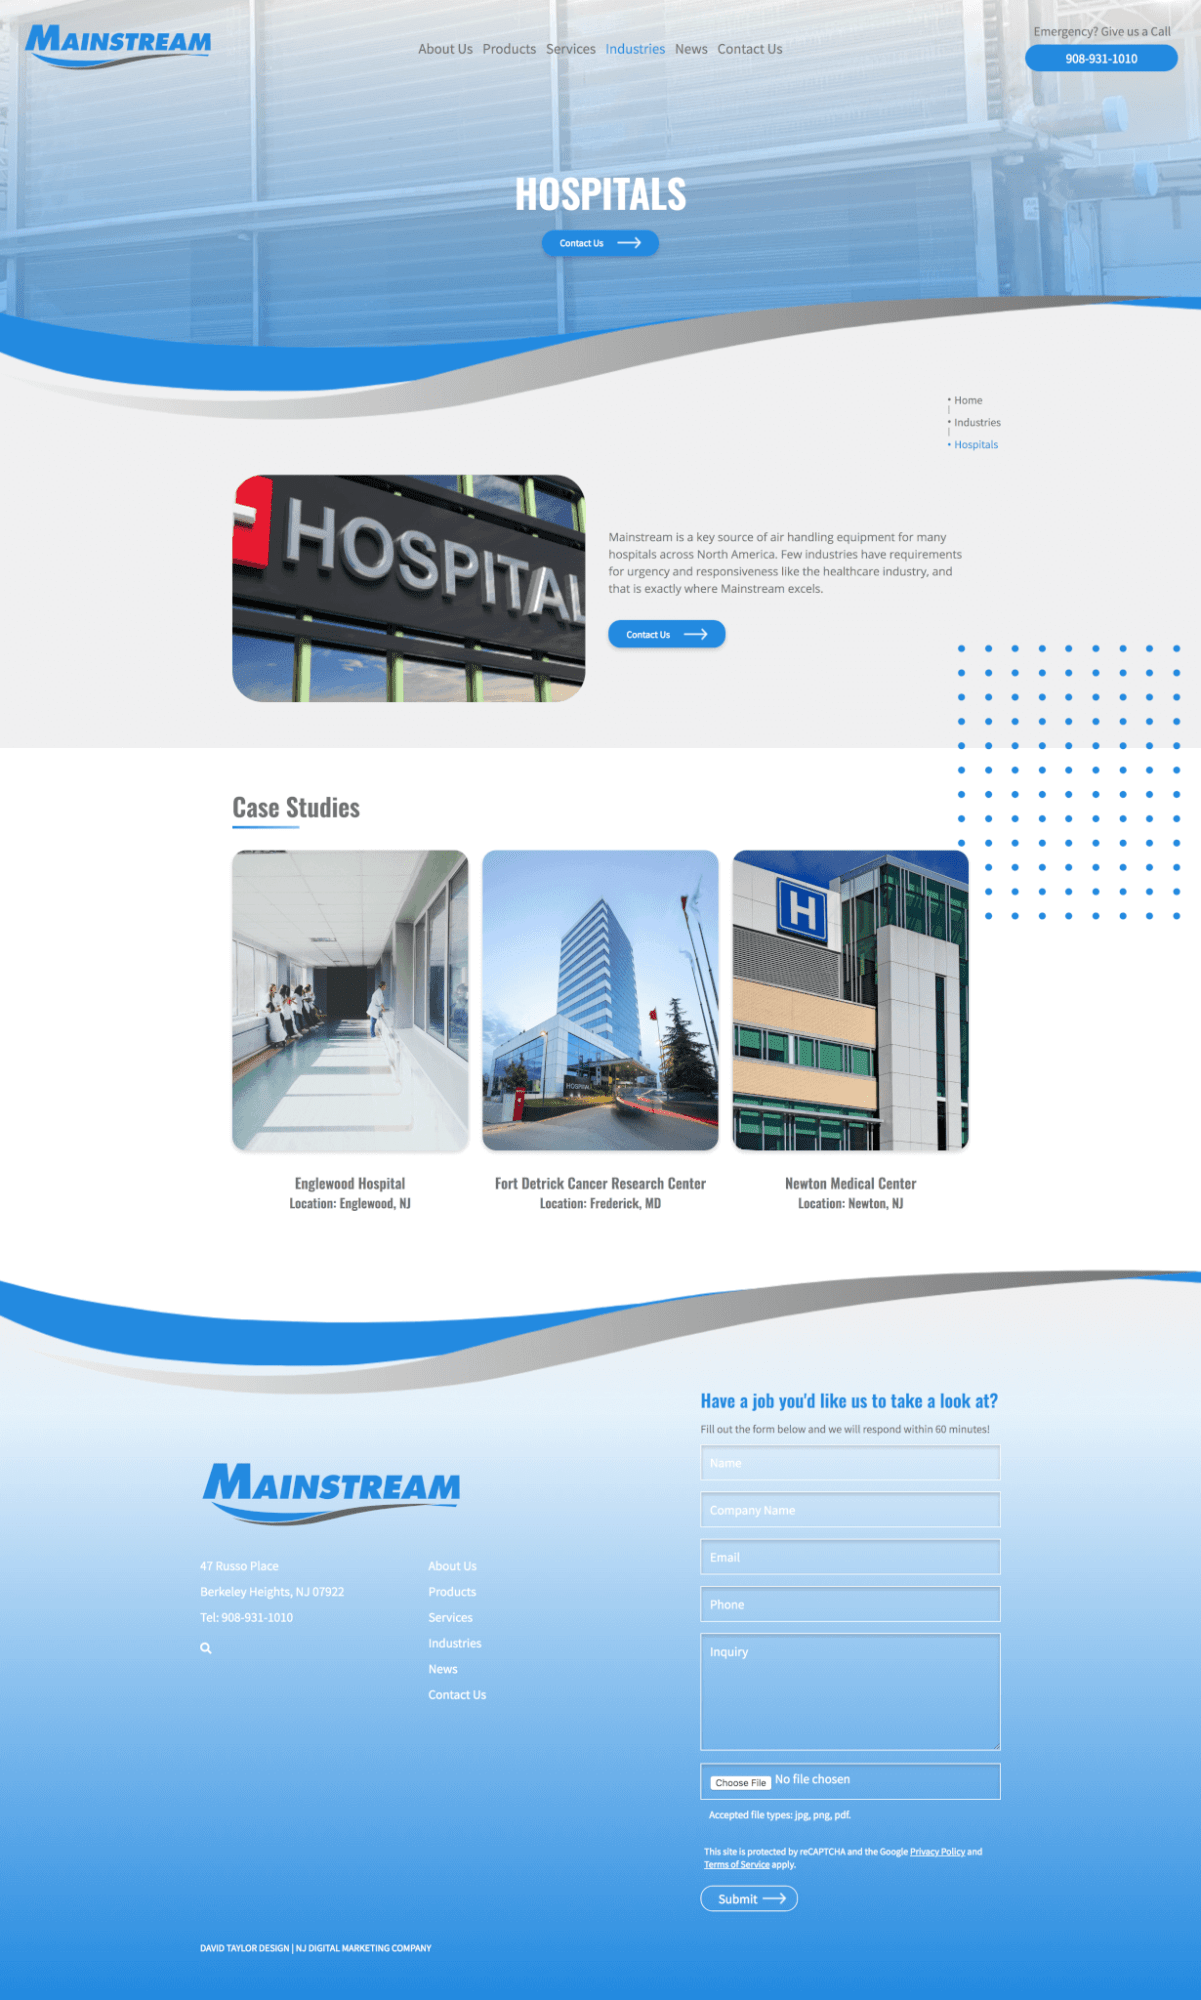 Mainstream – Hospitals